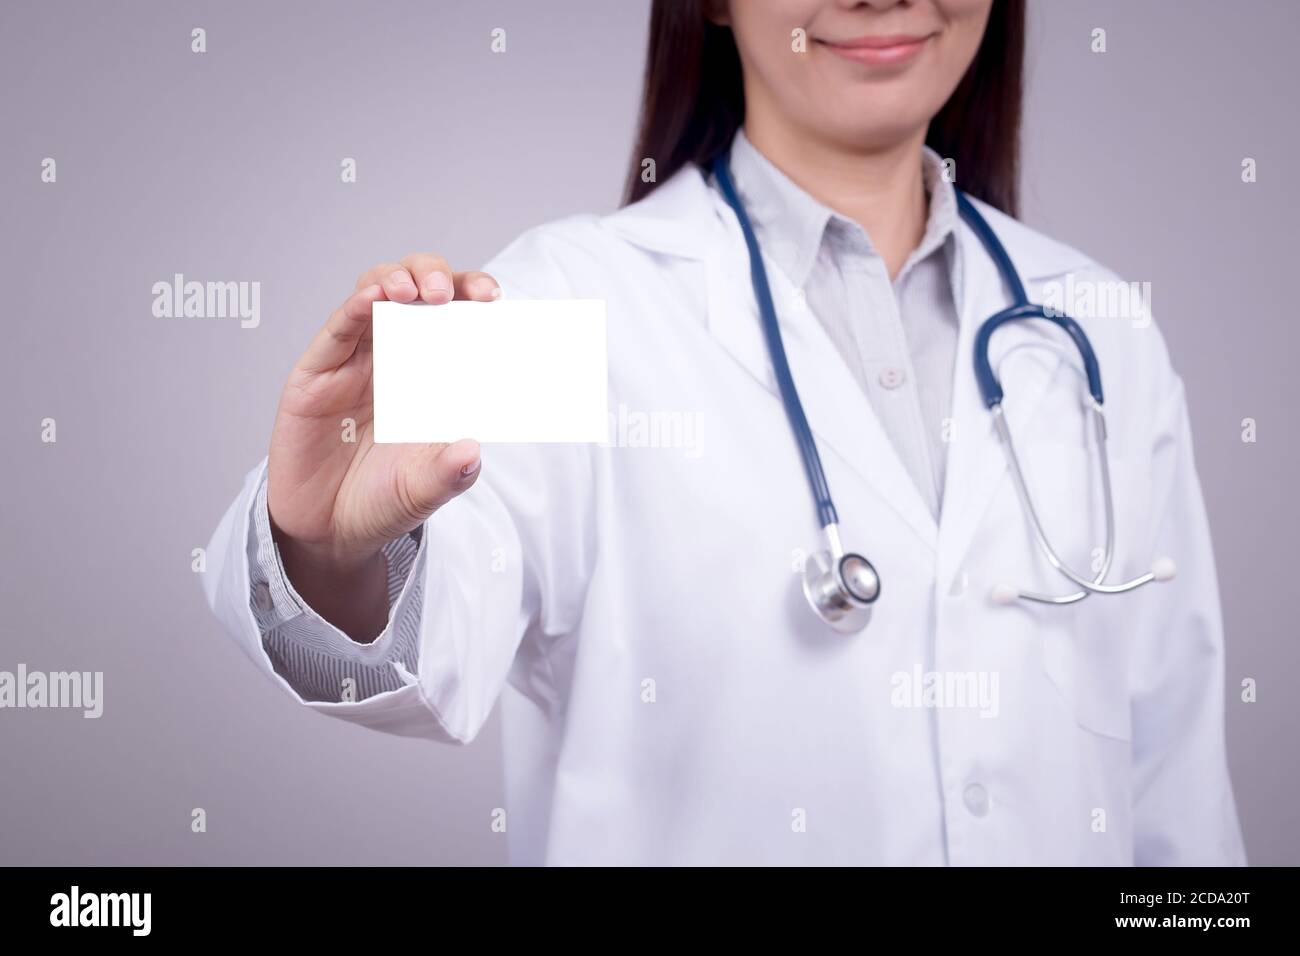 Concetto sano : giovane medico asiatico con biglietto da visita in mano, volto anonimo Foto Stock